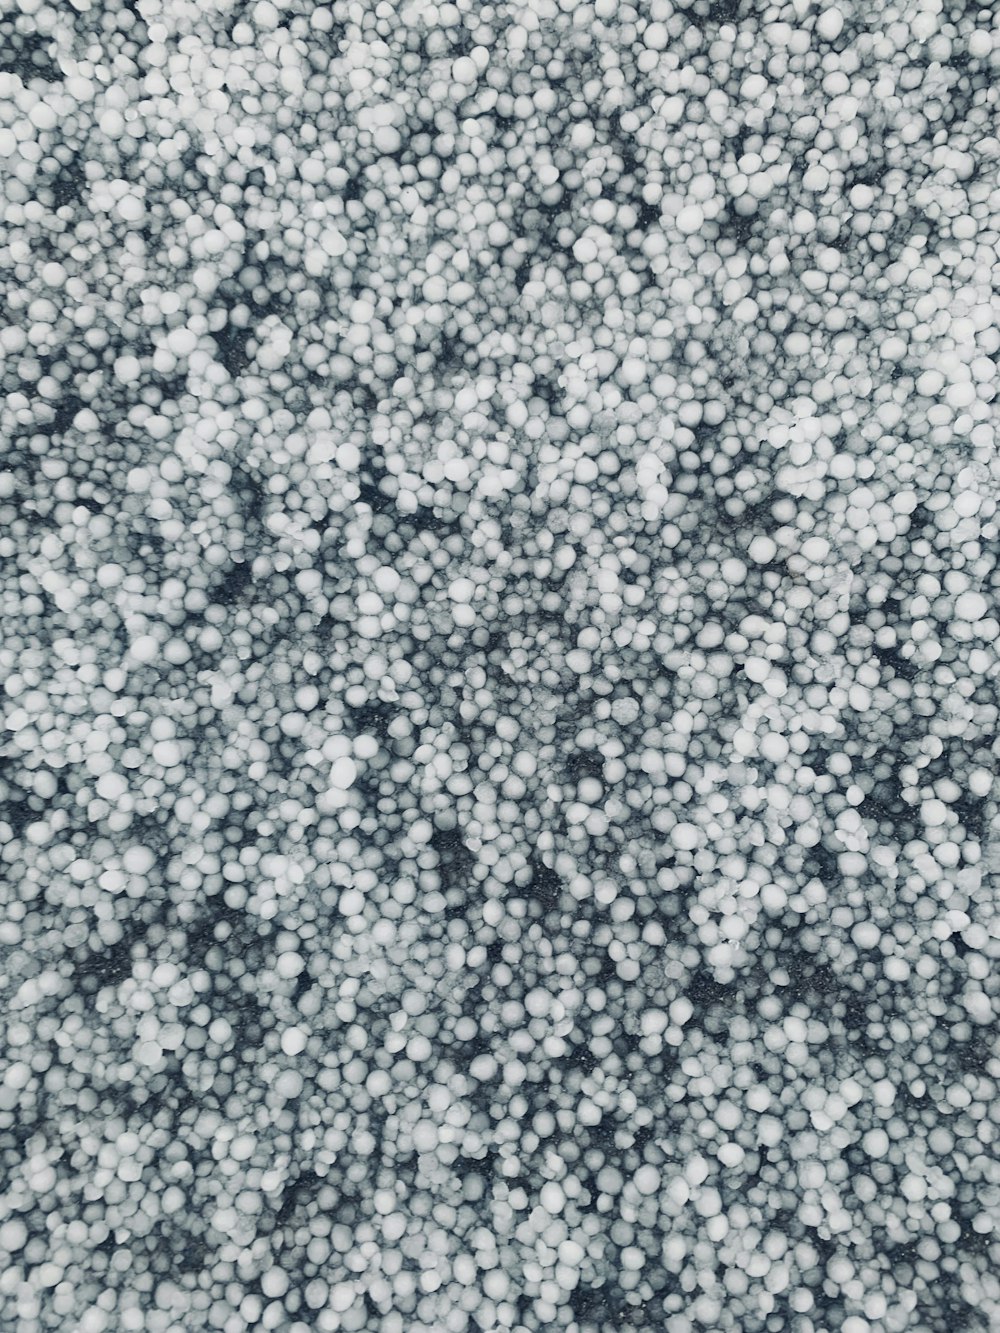 Una foto in bianco e nero di un mucchio di bolle